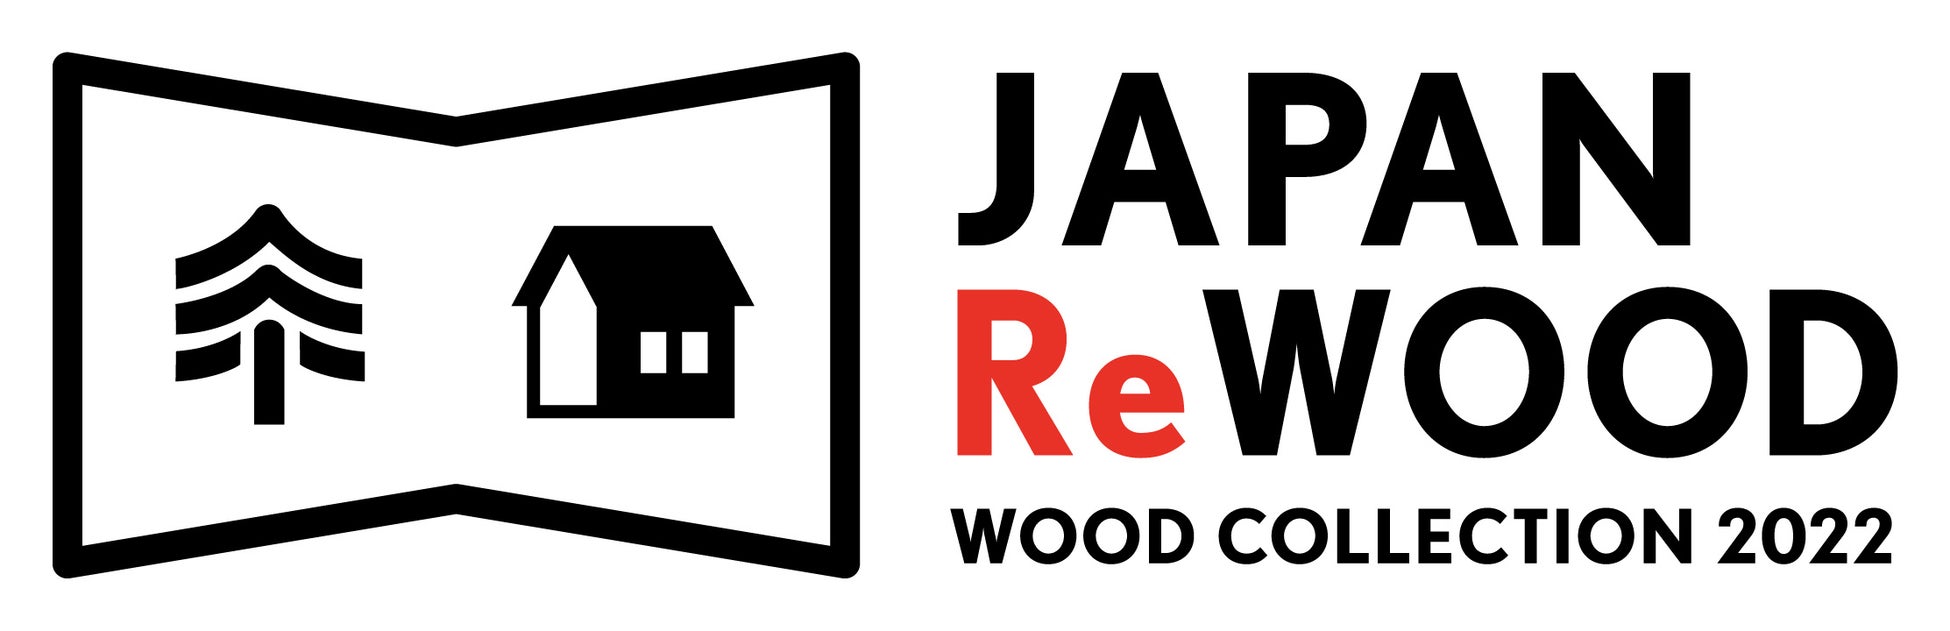 WOOD COLLECTION 2022『JAPAN ReWOOD』の見どころを紹介のサブ画像10